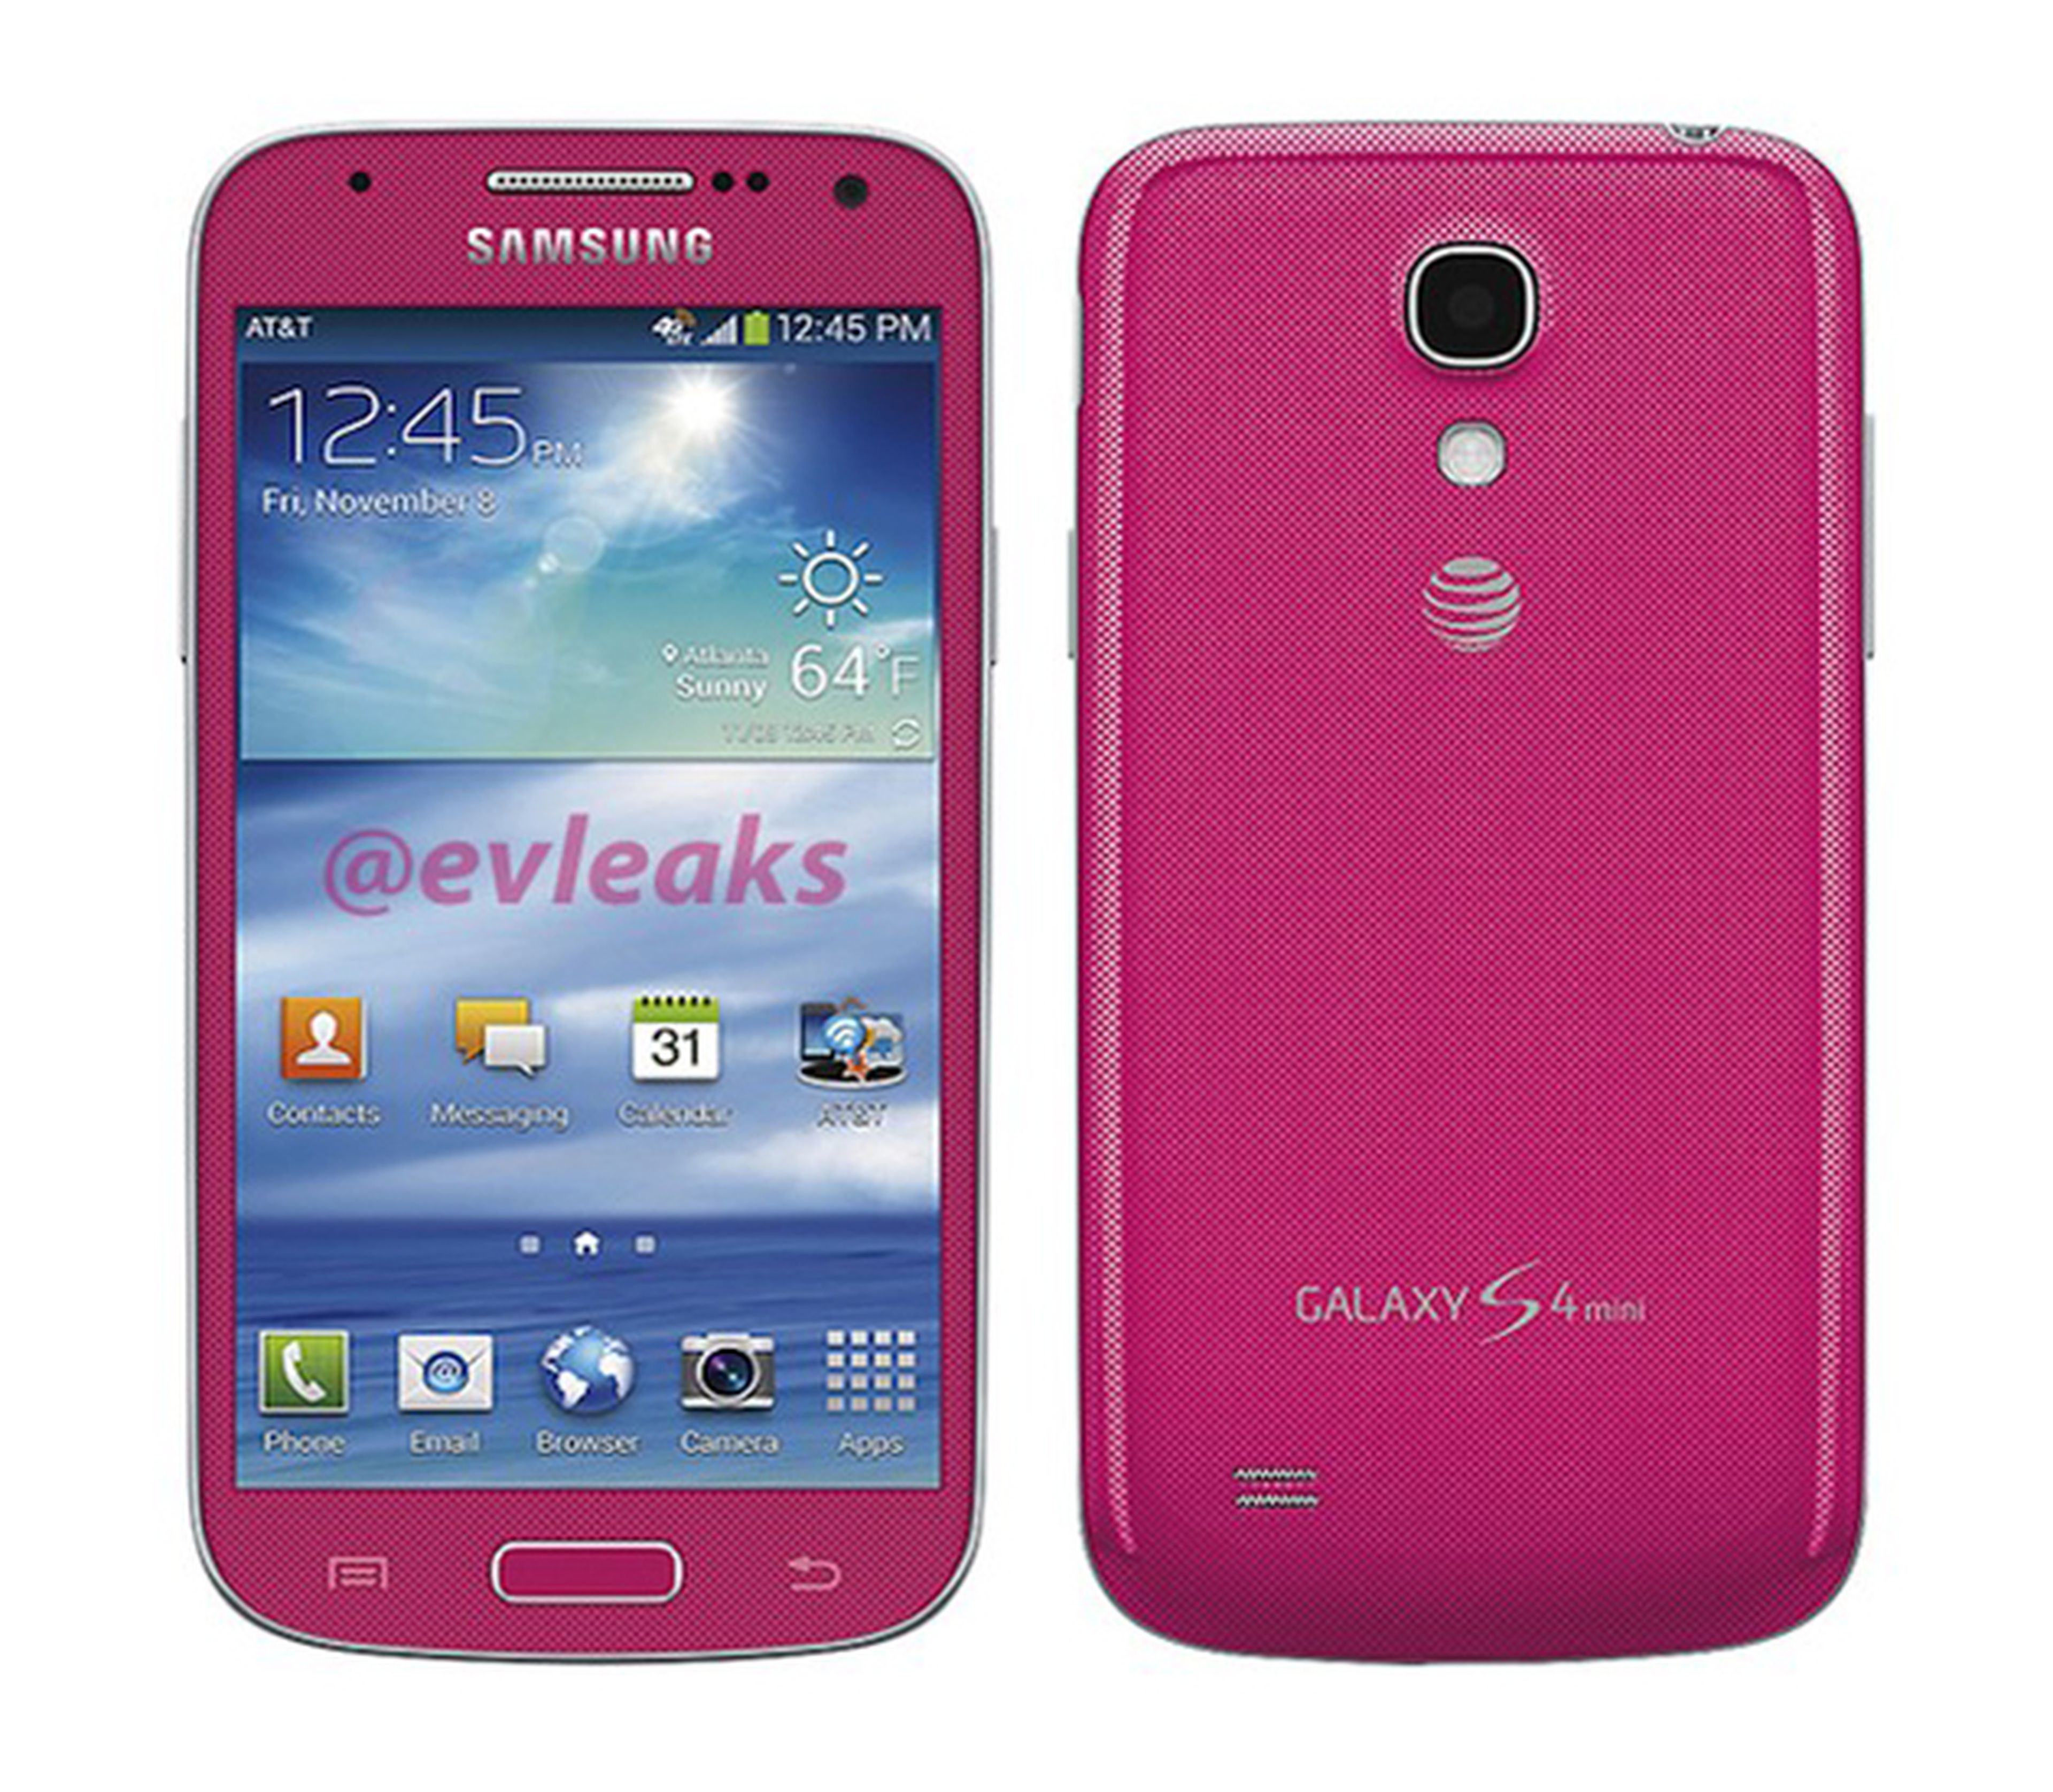 Samsung Galaxy S4 mini filtrado en color rosa | Computer Hoy